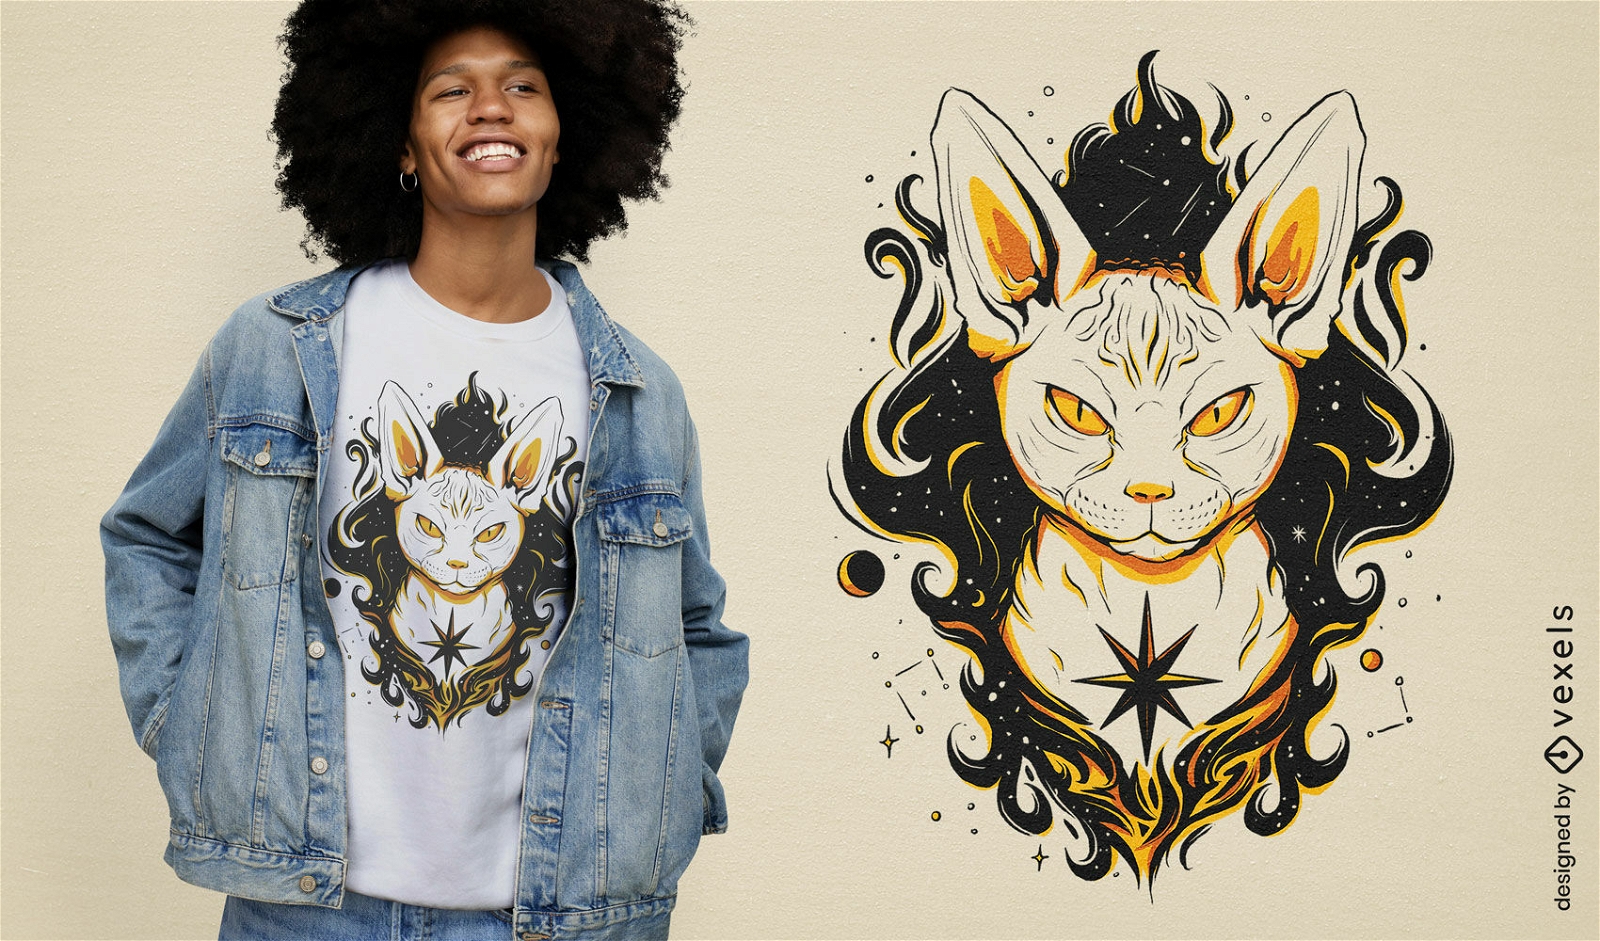 Sphynx cat magic t-shirt design